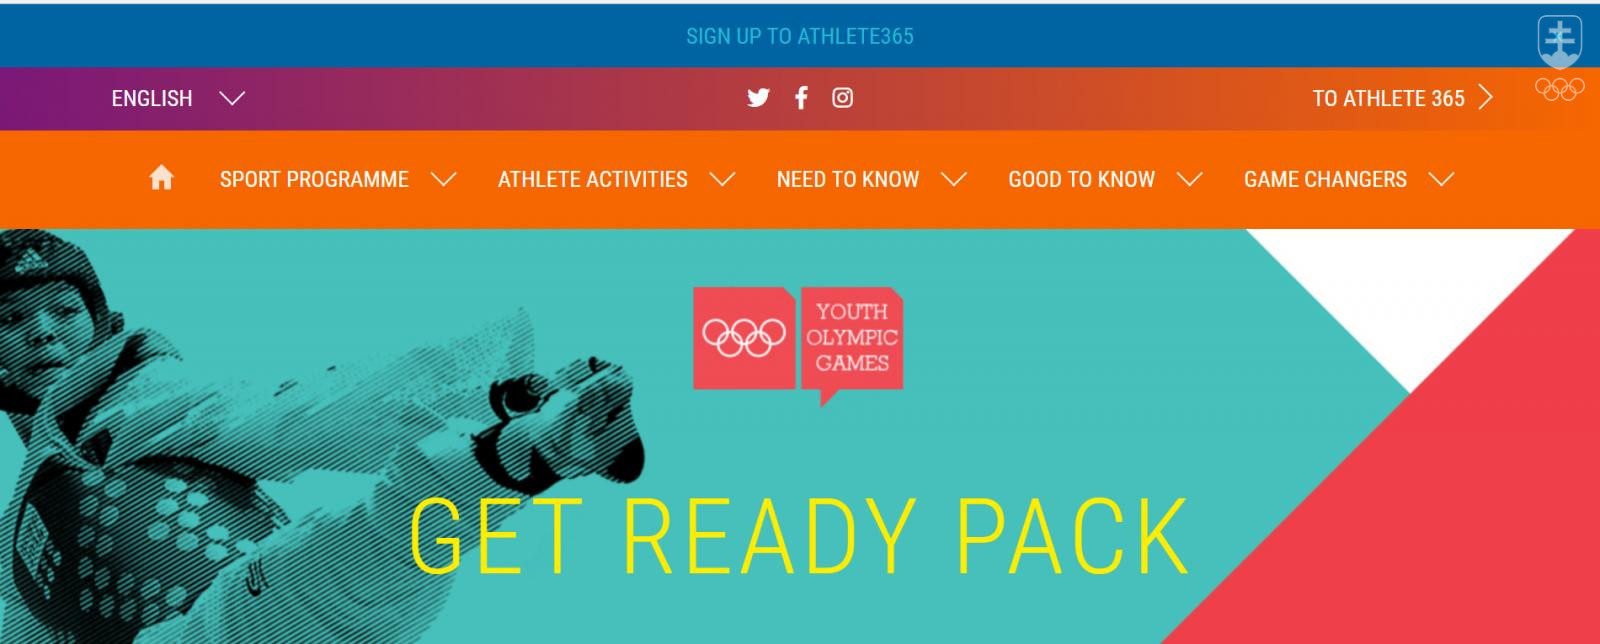 Podrobné informácie o hrách v Buenos Aires priamo od organizátorov